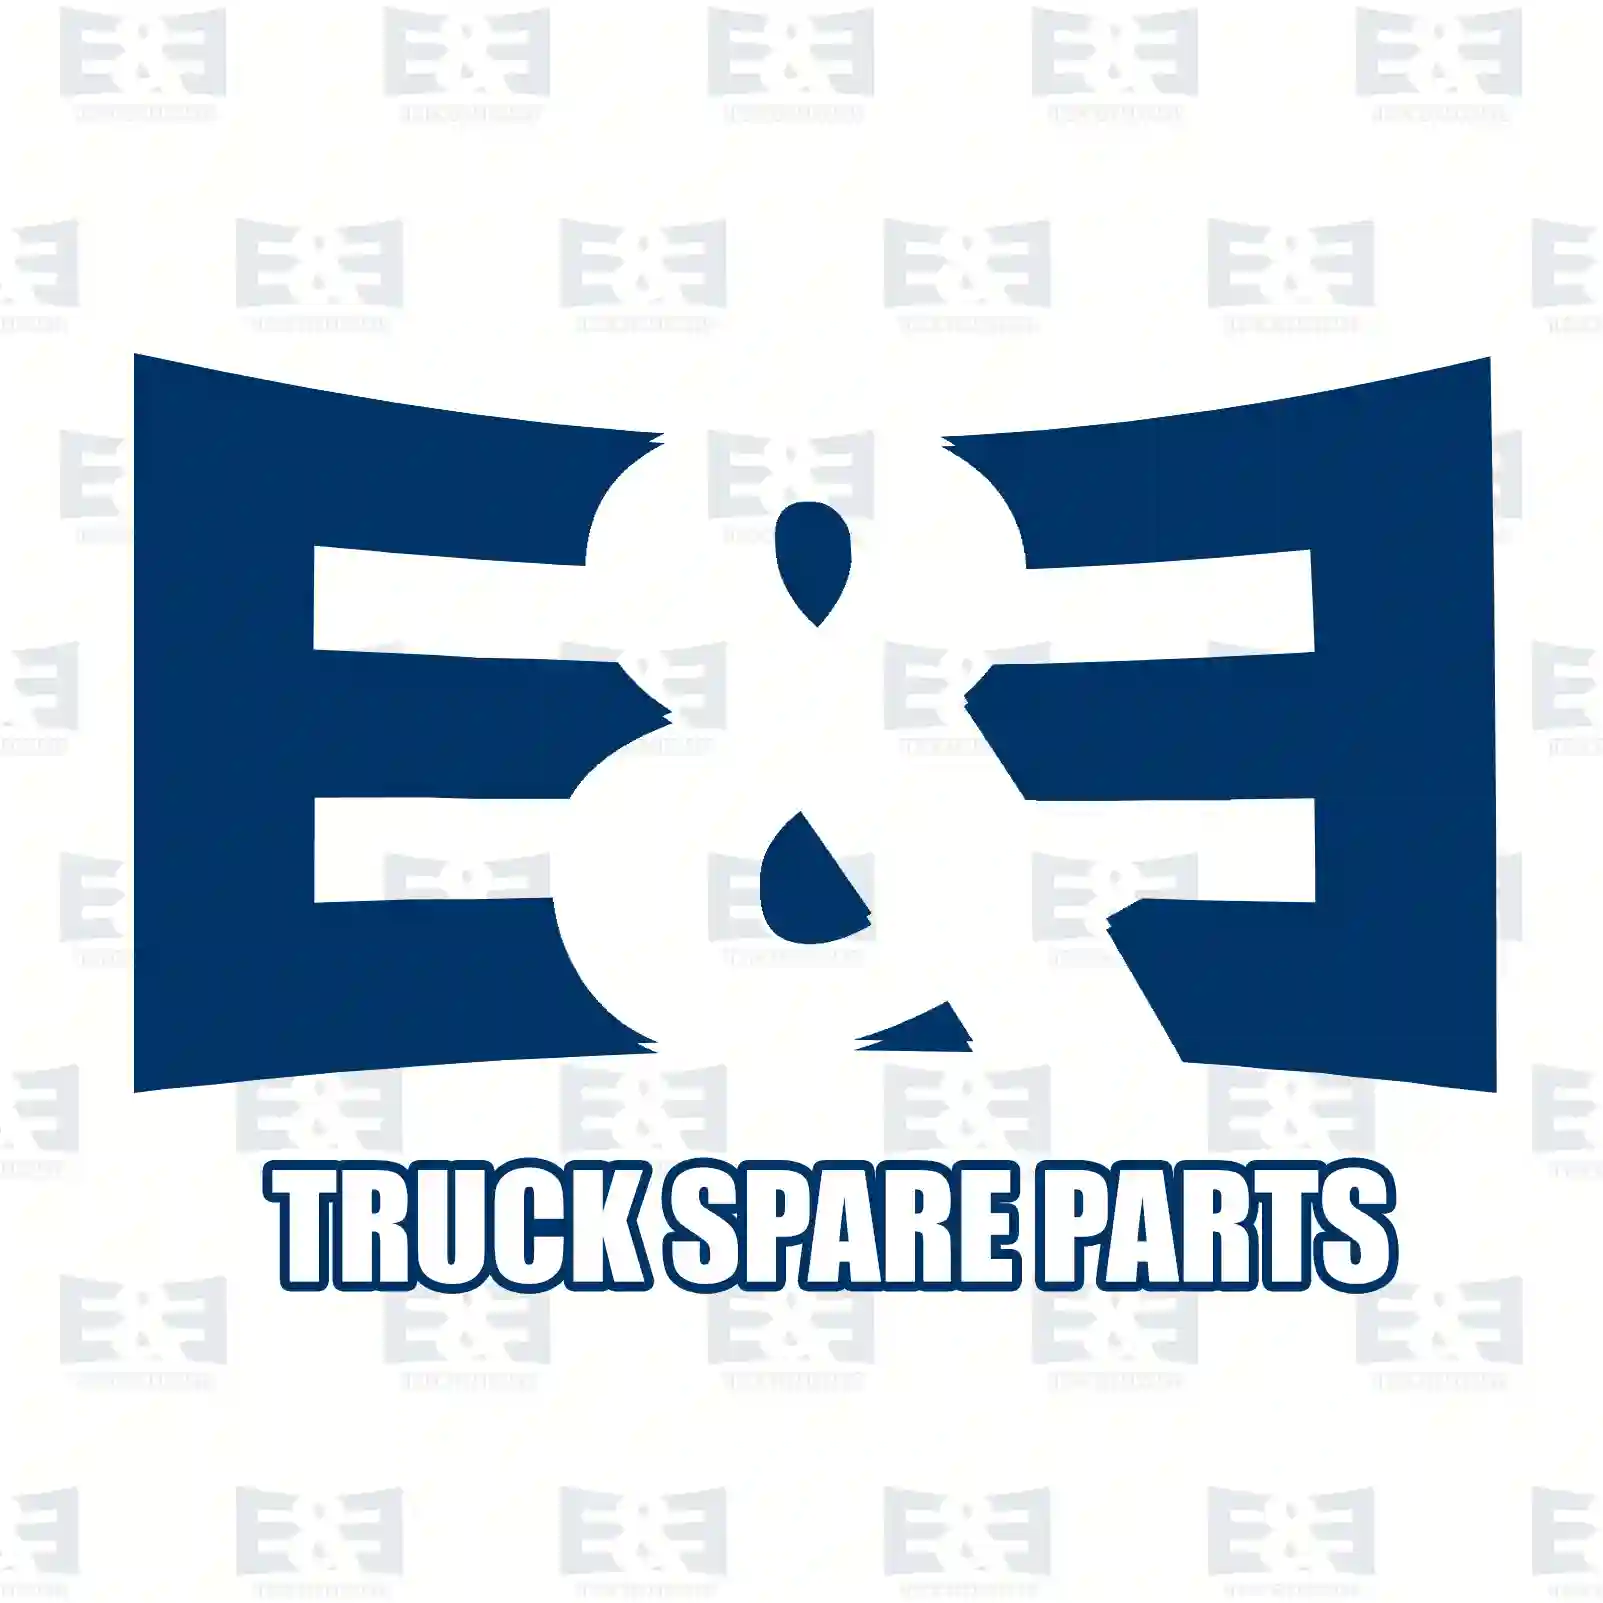 Spring, 2E2278948, 1668181, ZG40295-0008 ||  2E2278948 E&E Truck Spare Parts | Truck Spare Parts, Auotomotive Spare Parts Spring, 2E2278948, 1668181, ZG40295-0008 ||  2E2278948 E&E Truck Spare Parts | Truck Spare Parts, Auotomotive Spare Parts